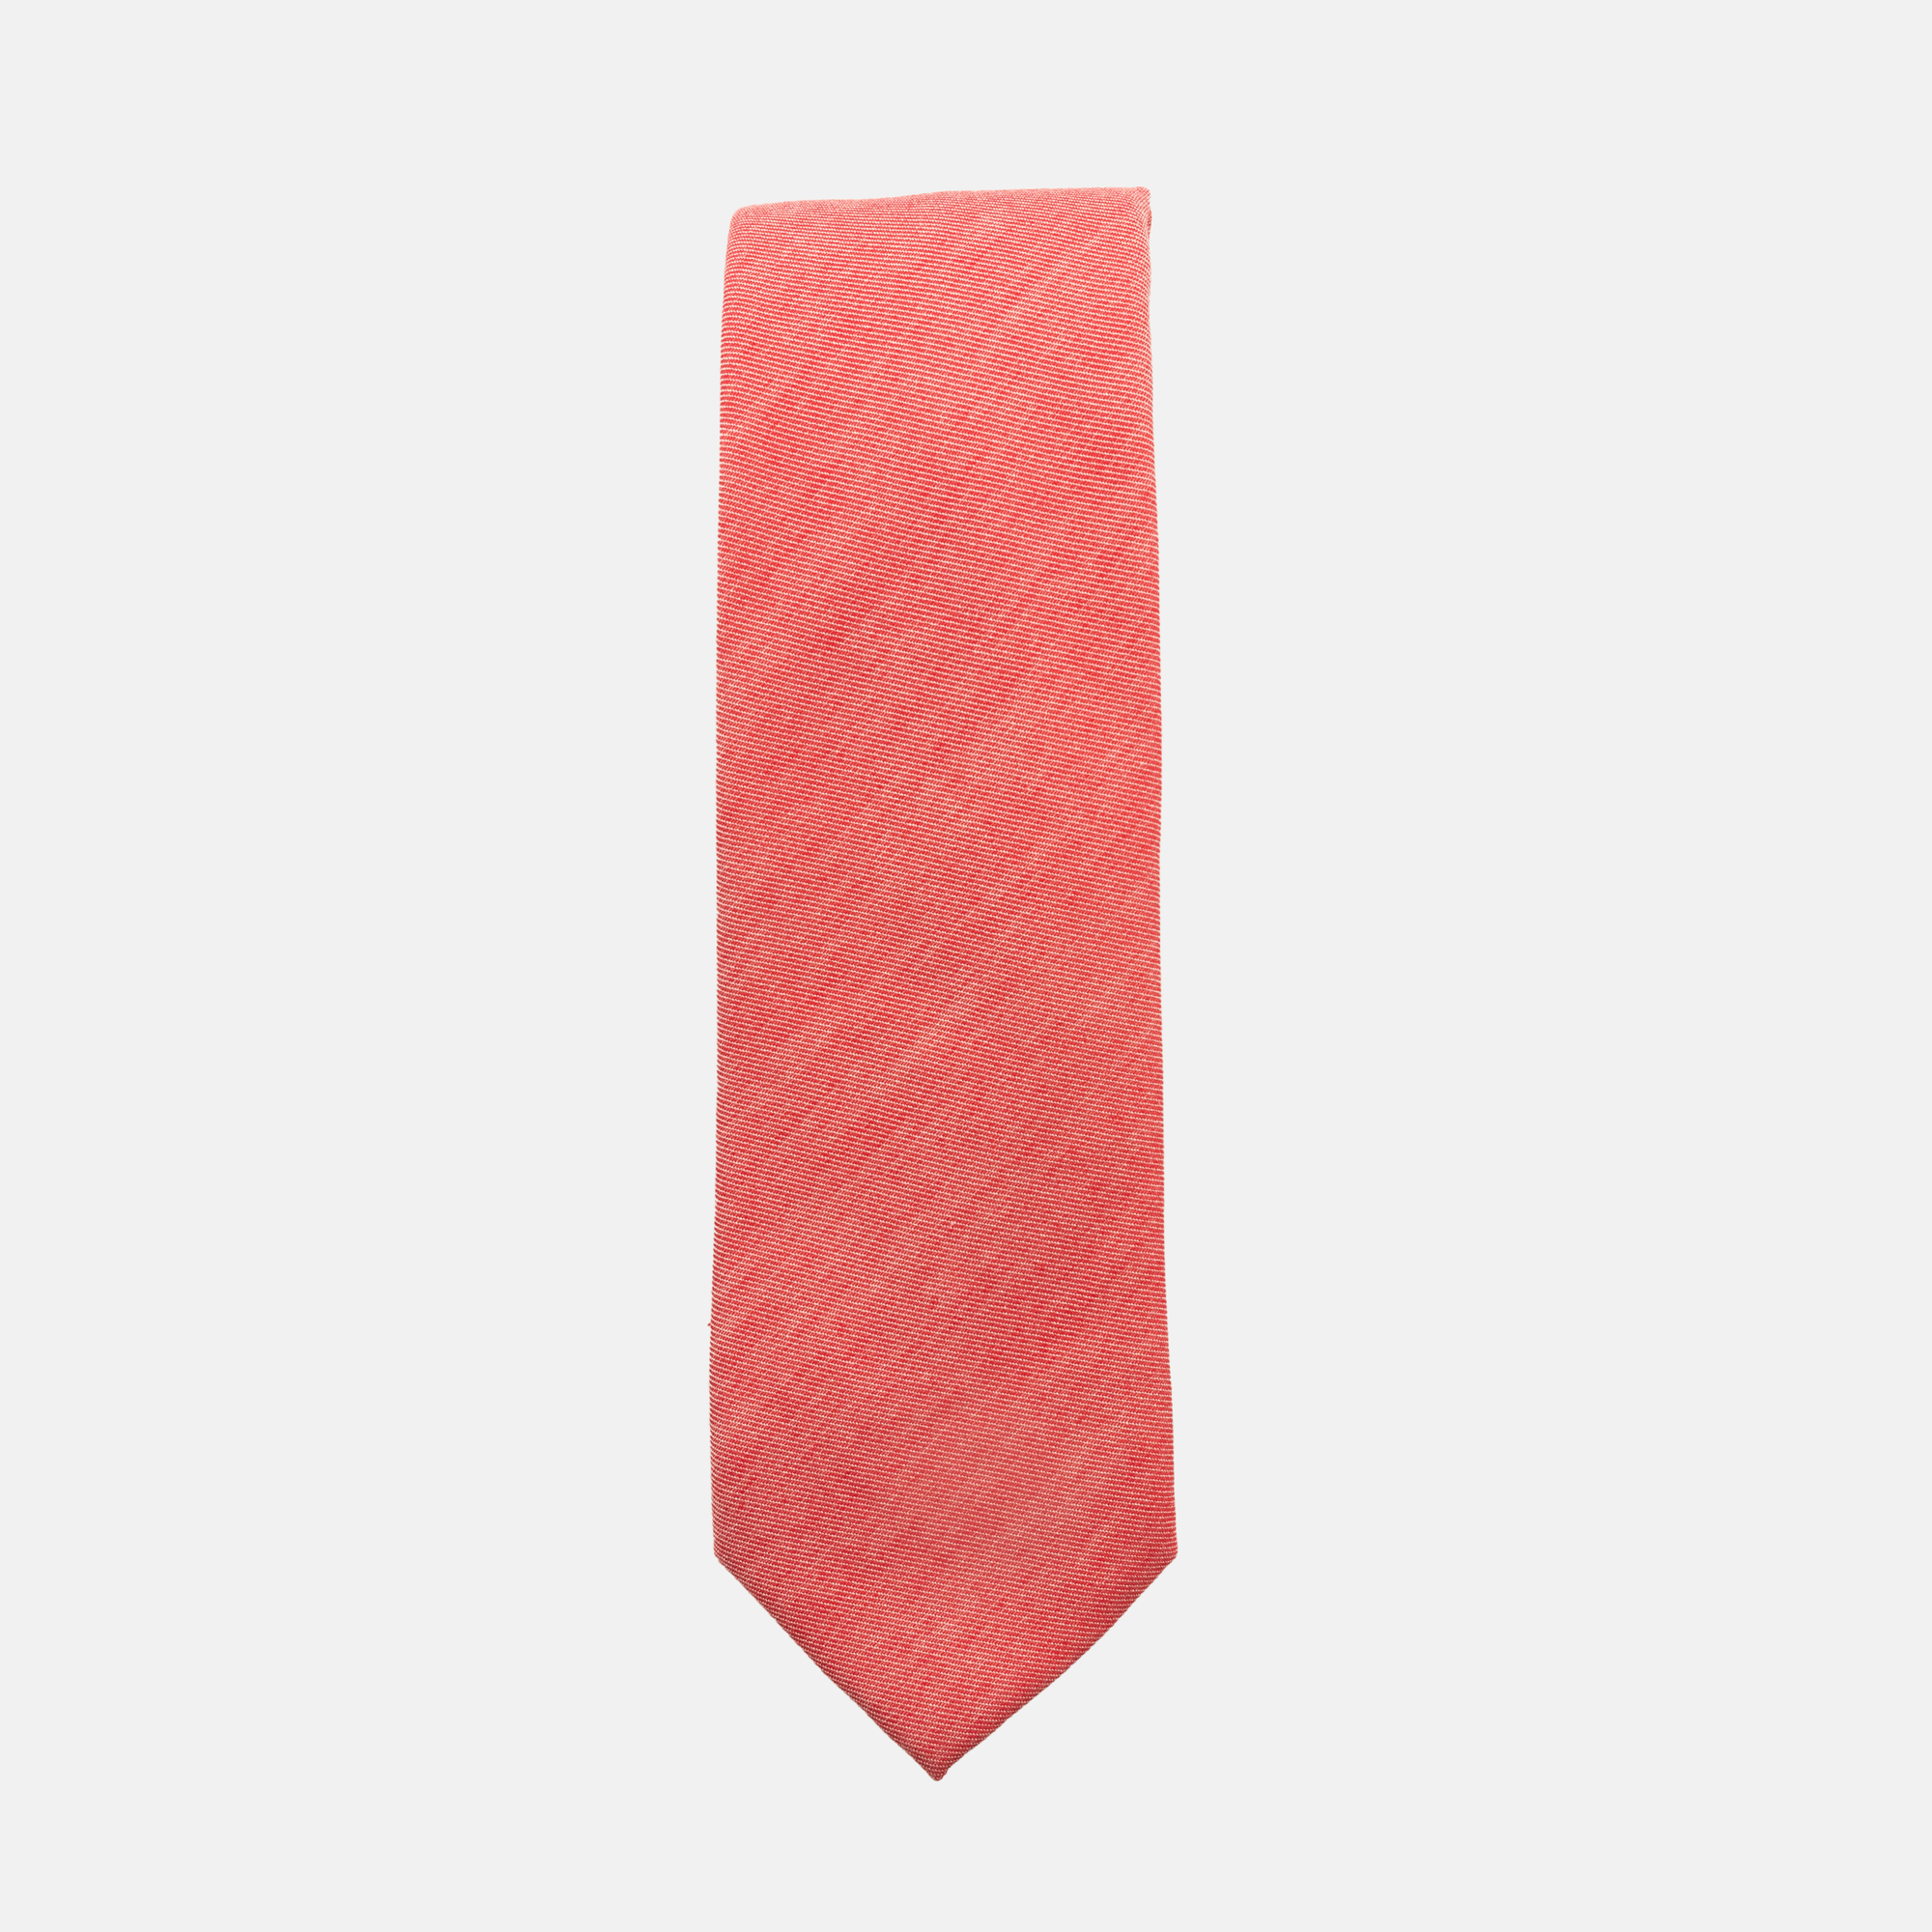 RILEY - Men's Tie